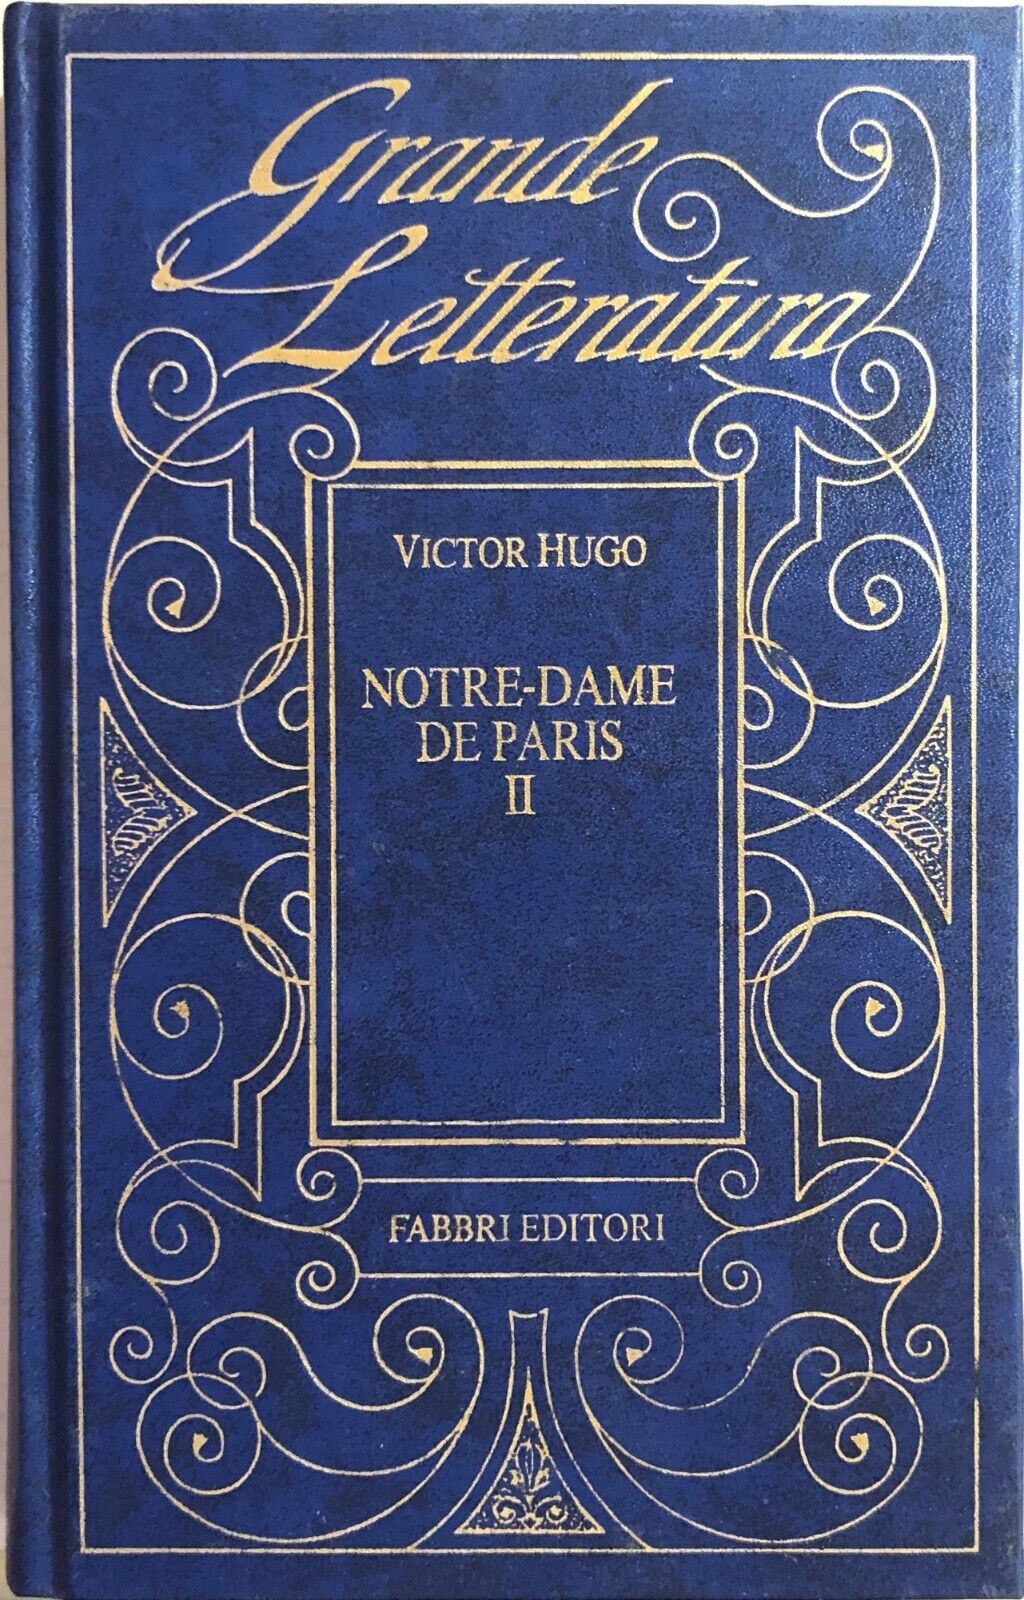 Notre Dame de Paris Vol.II di Victor Hugo, 1993, Fabbri editore